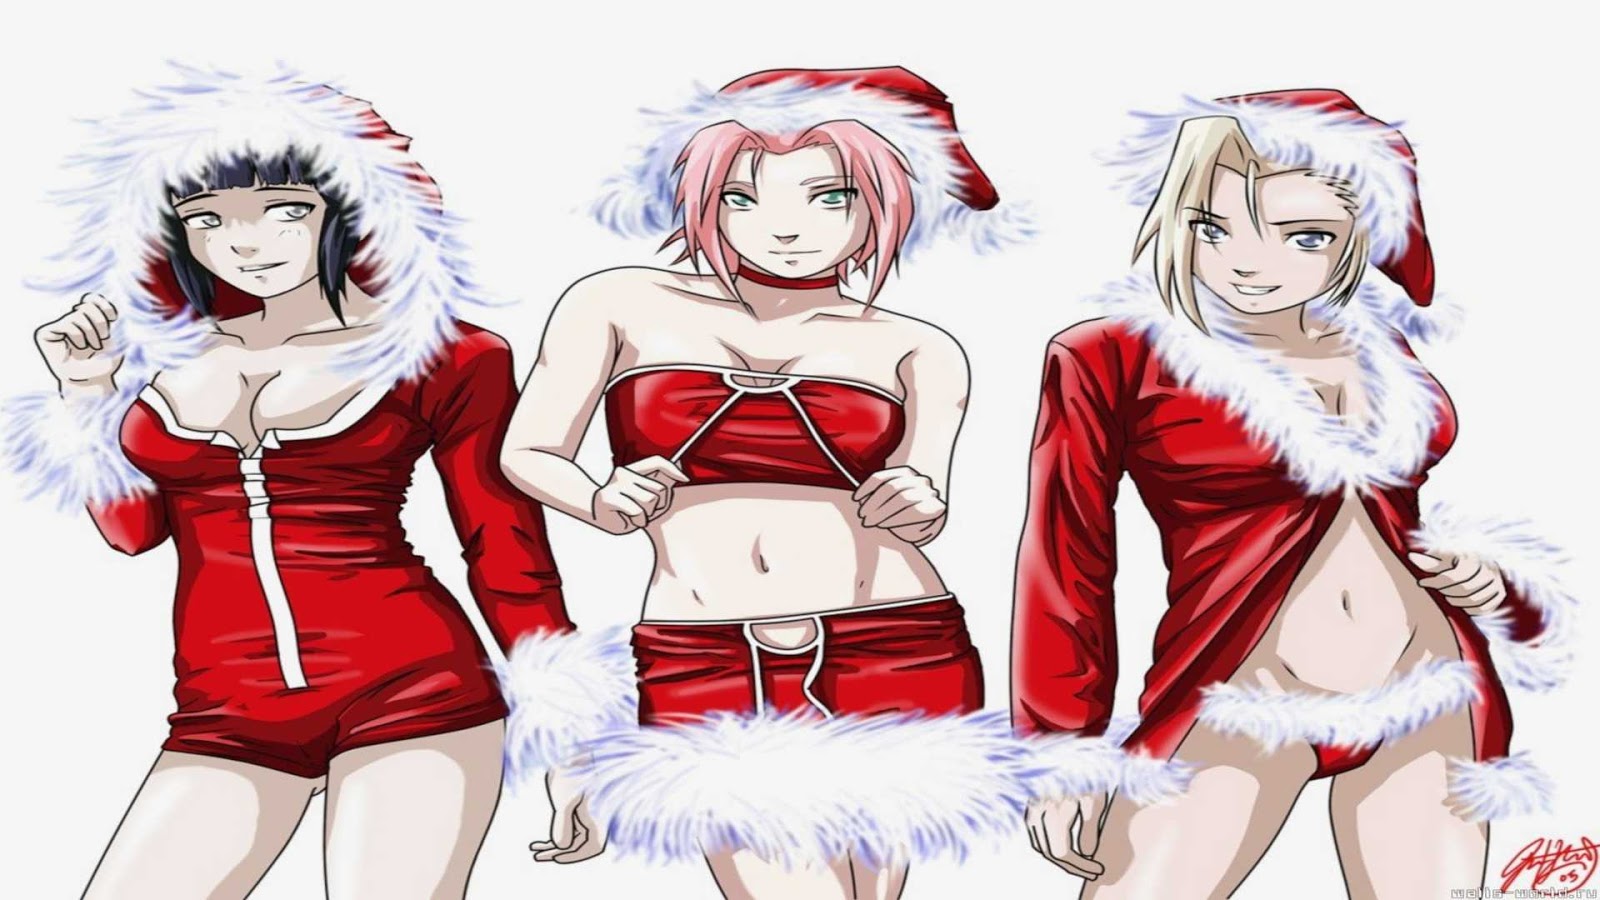 http://4.bp.blogspot.com/-xziX5GcrryI/UNzMyNX3xnI/AAAAAAAA0K8/OvOxEianfTw/s1600/Wallpapers+Navidad+Anime+-+Merry+Christmas++(2)+-+1920x1080.jpg